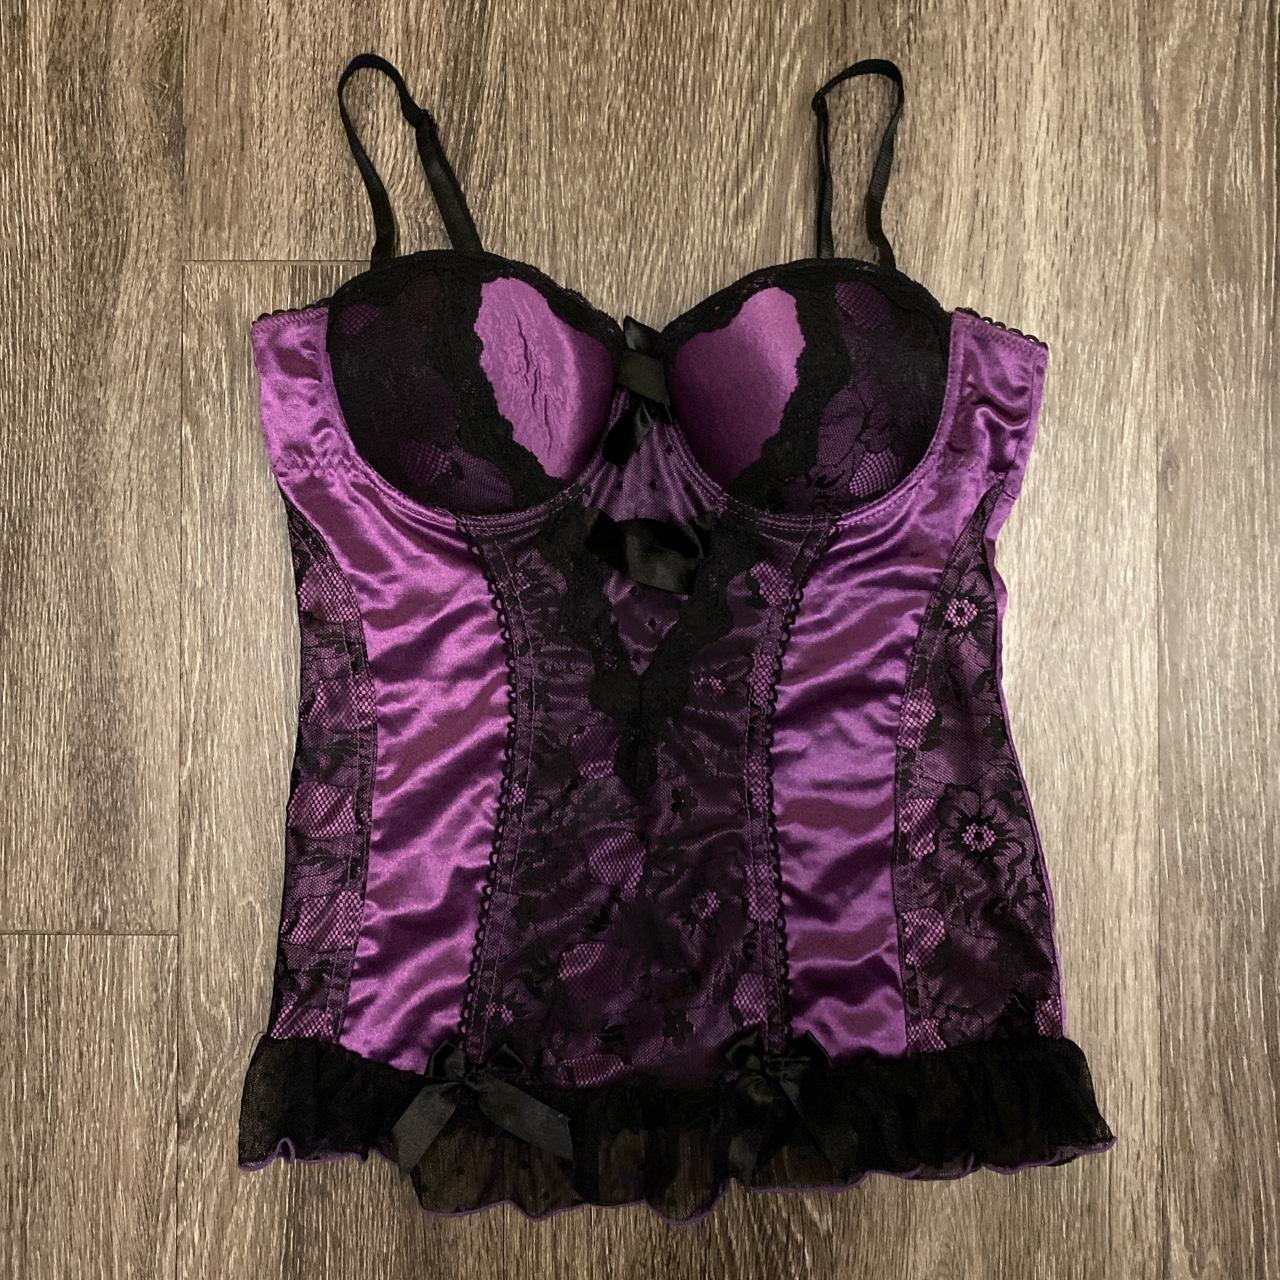 Product Image 1 - Purple lace corset lingerie top!